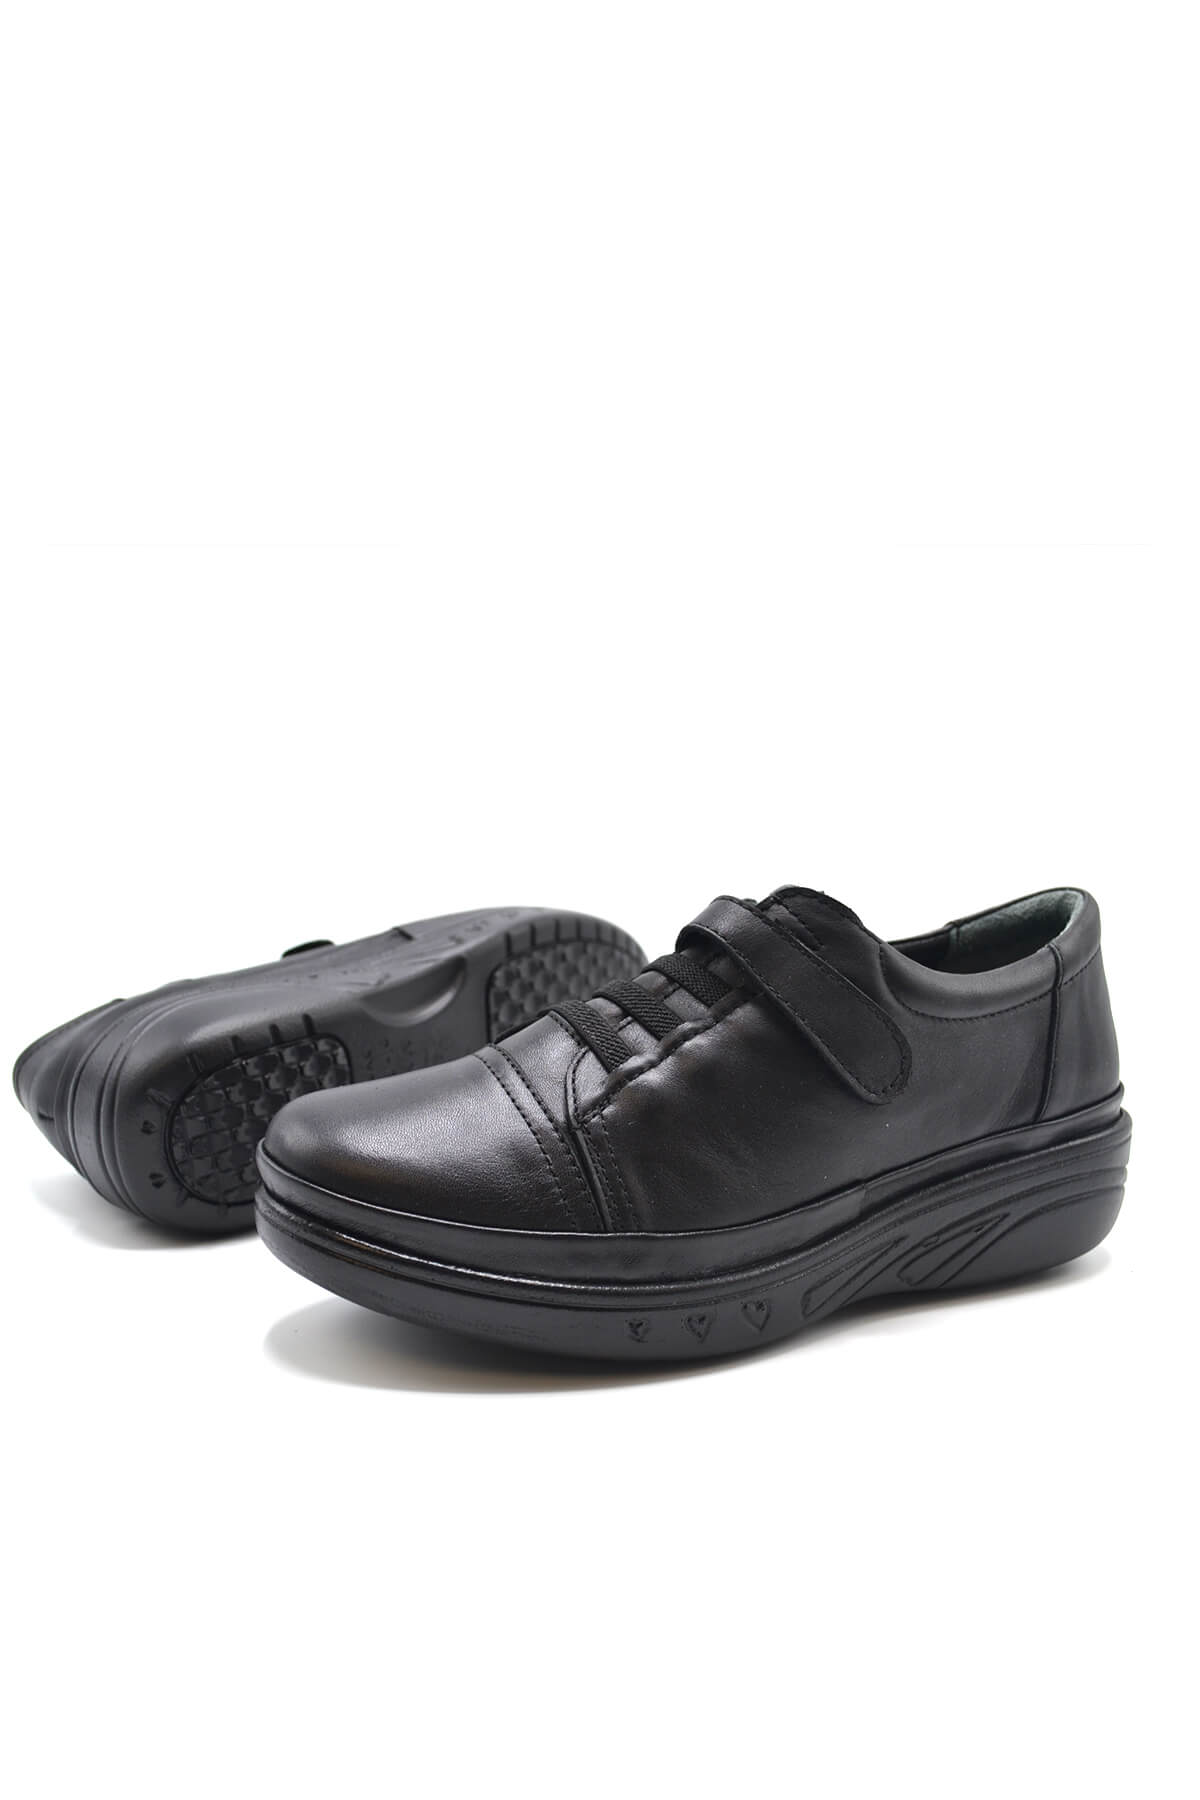 Kadın Comfort Deri Ayakkabı Siyah 1820524K